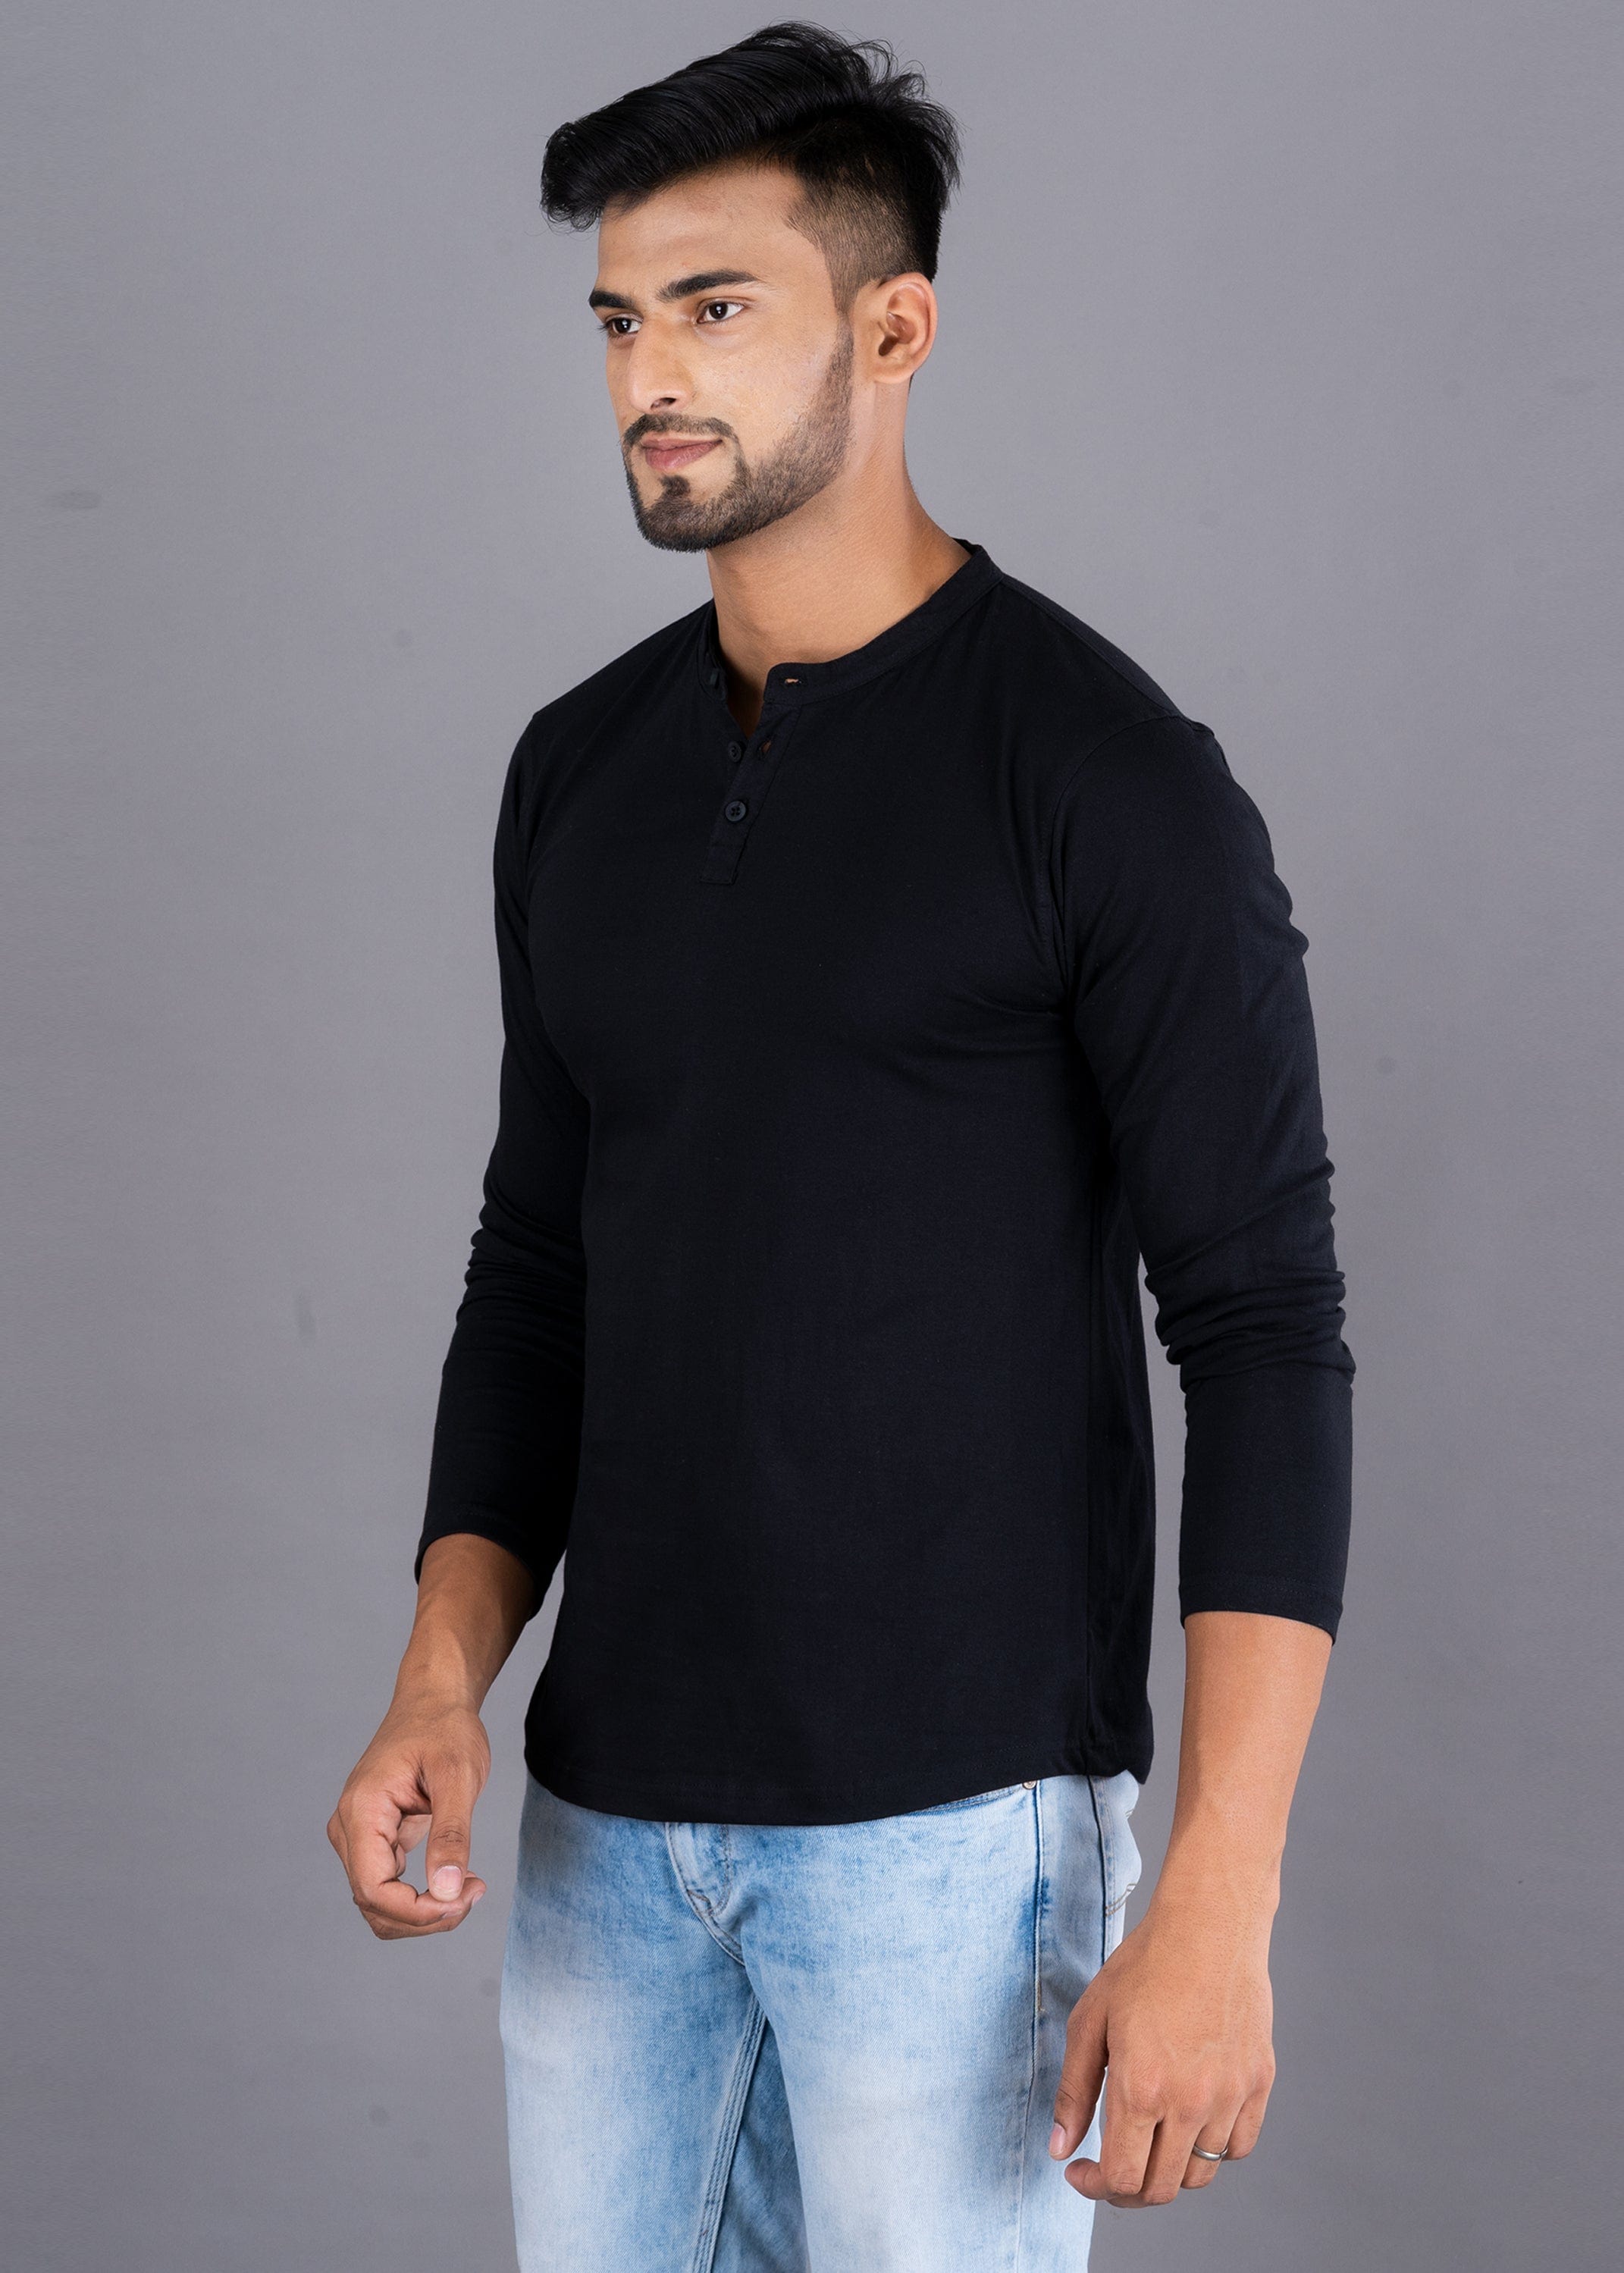 Solid Full Sleeve Premium Cotton Henley T-shirt For Men - Black